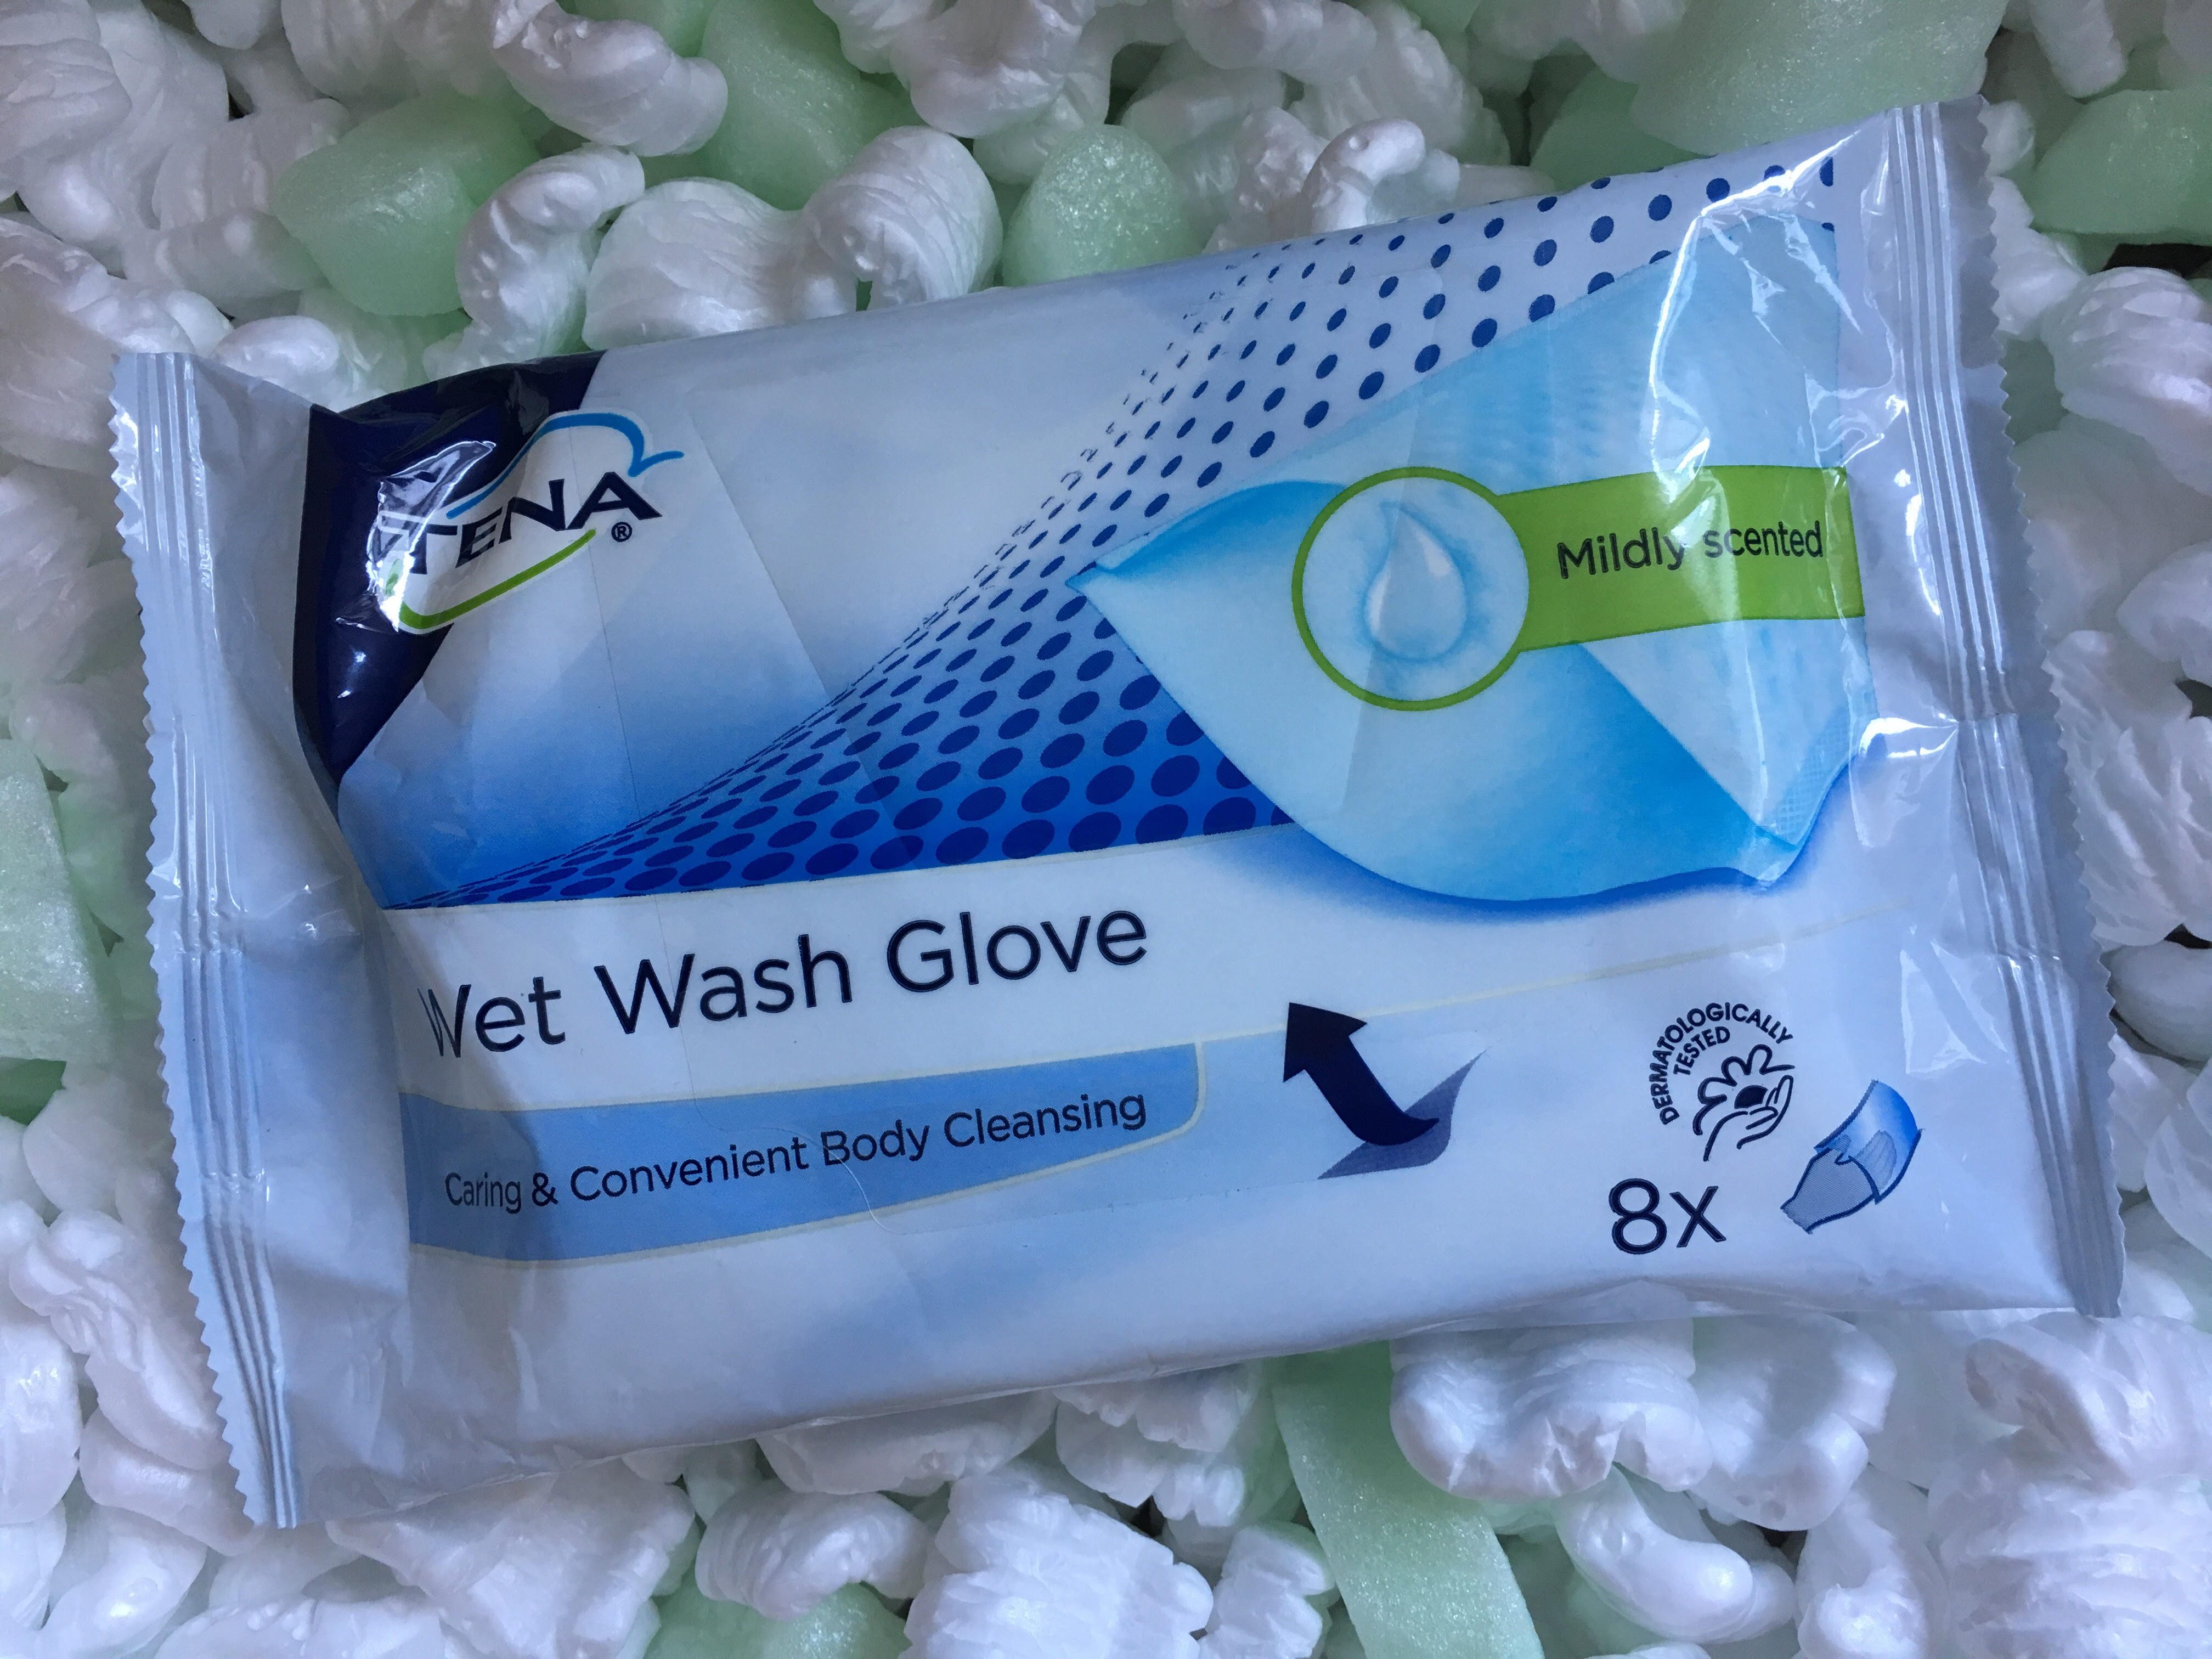 Wij gaan op reis en nemen mee: Wet Wash Glove